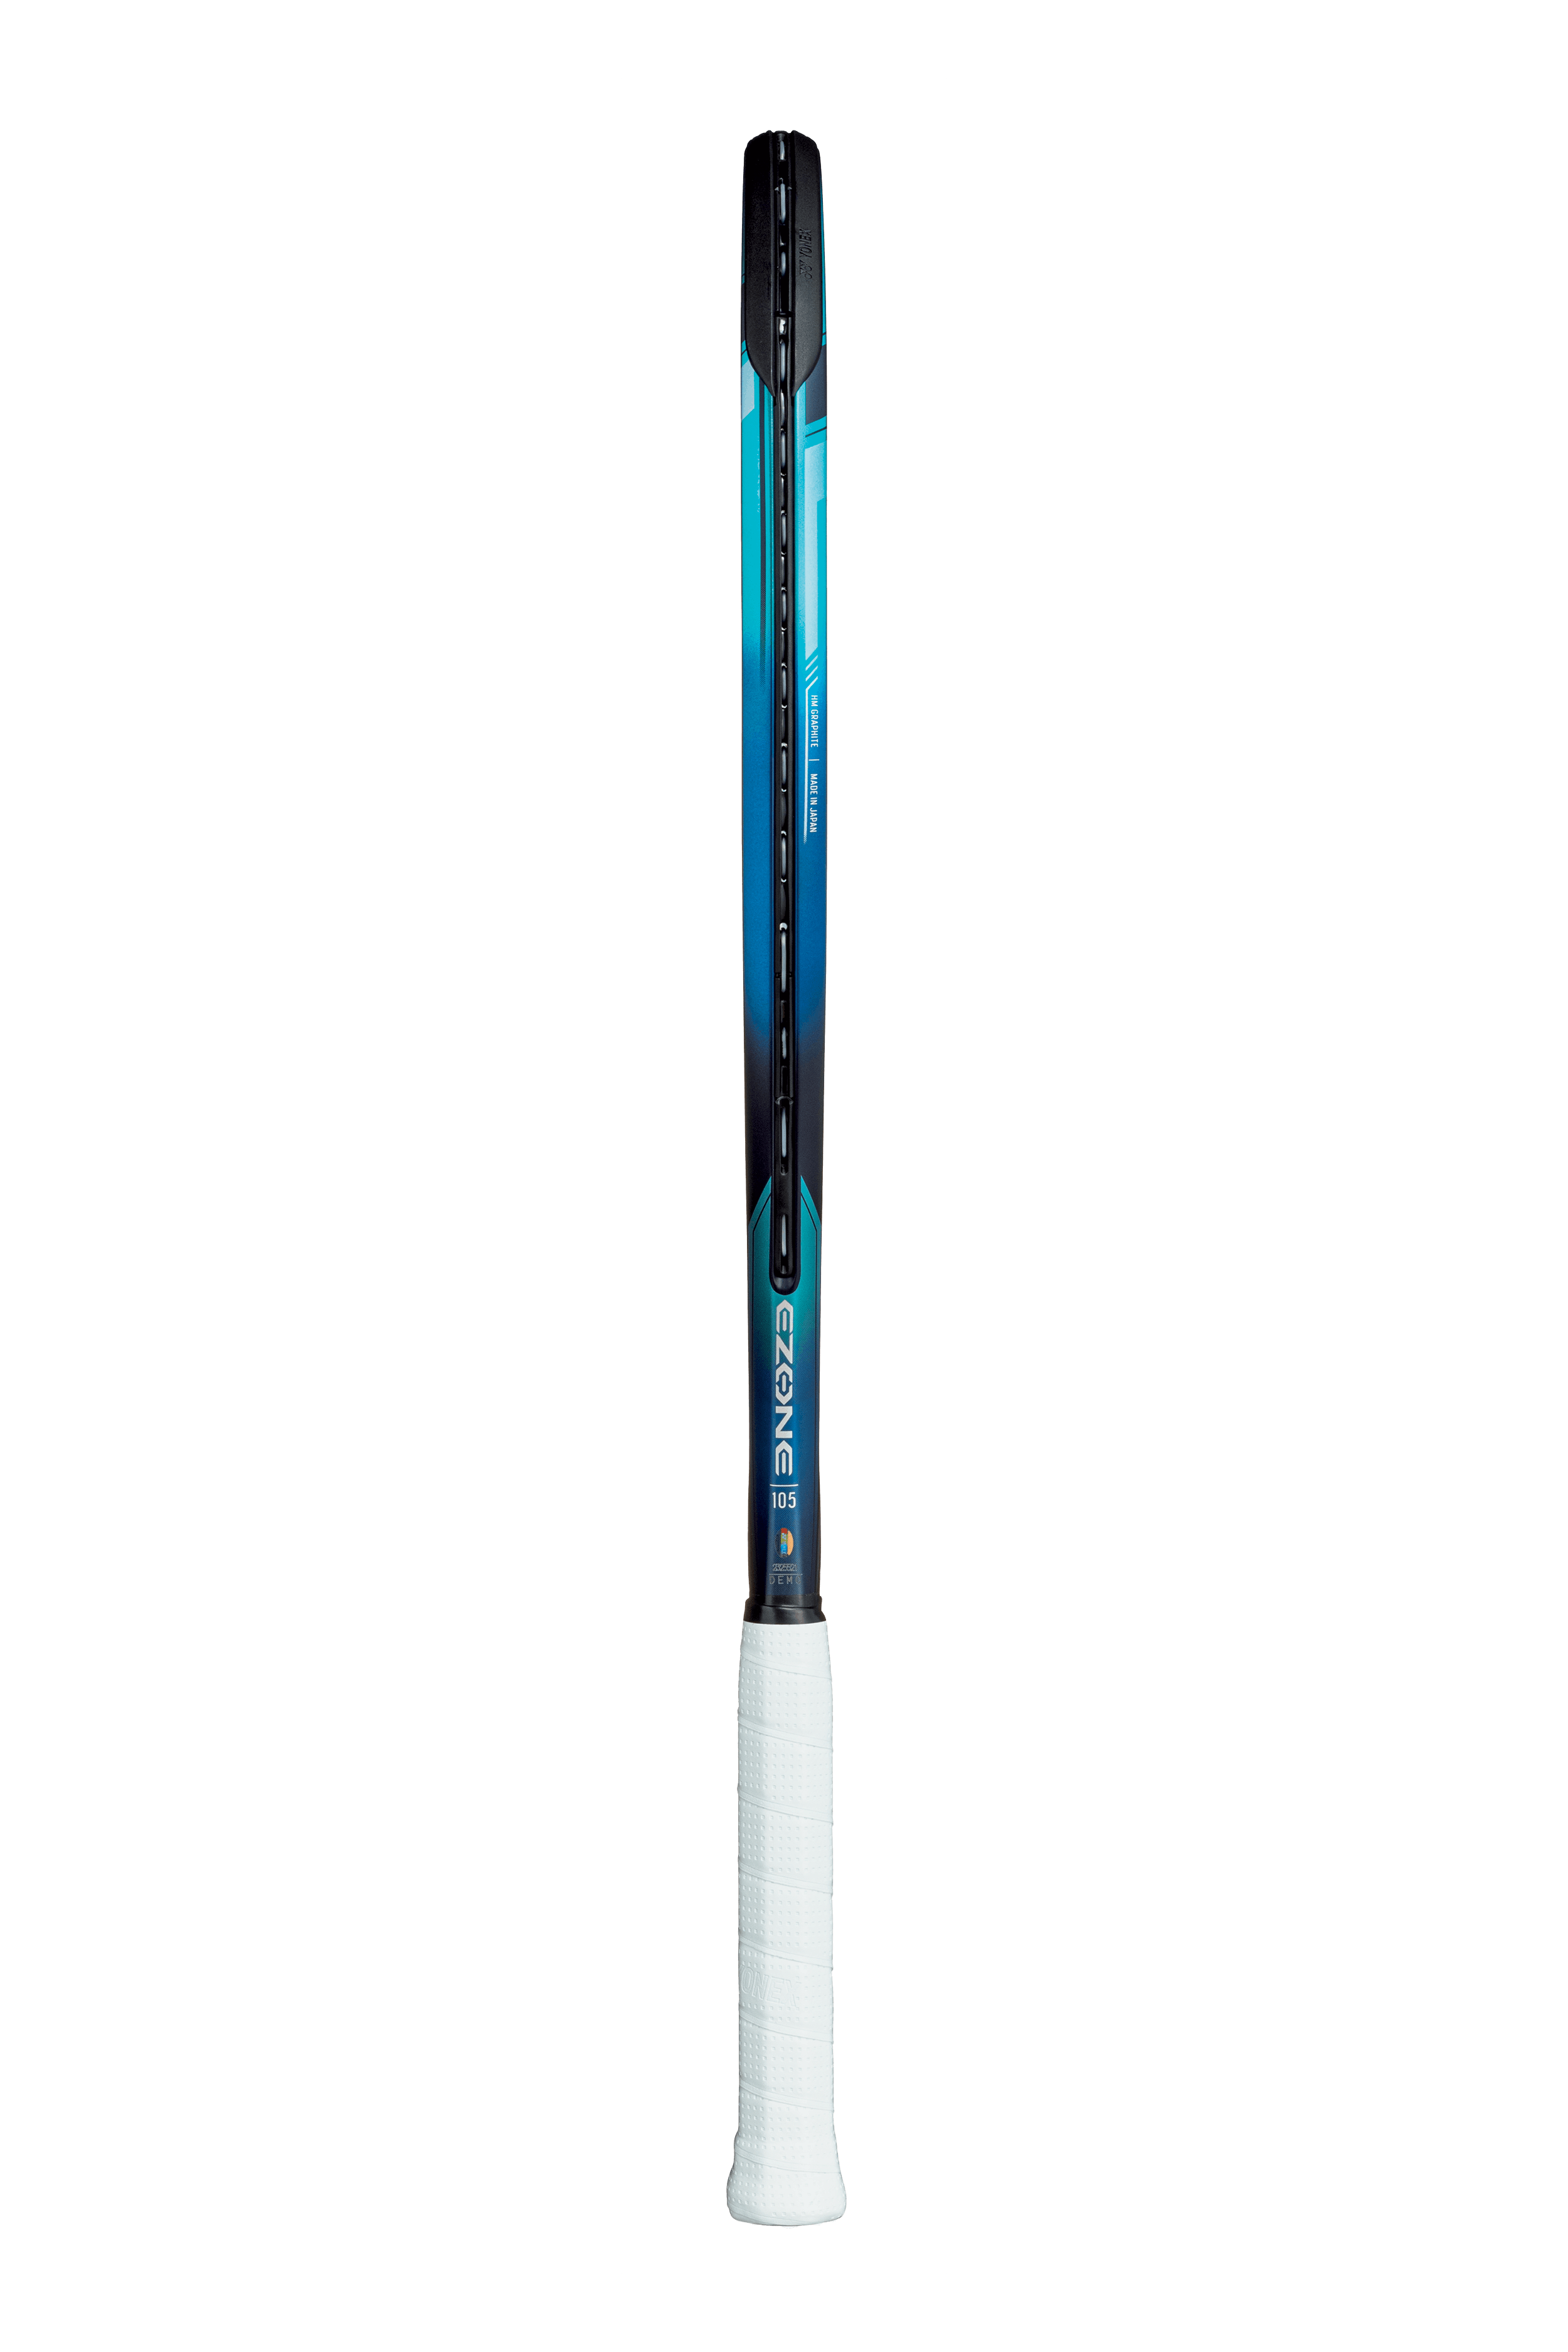 Yonex EZone 105 Racquet · Unstrung